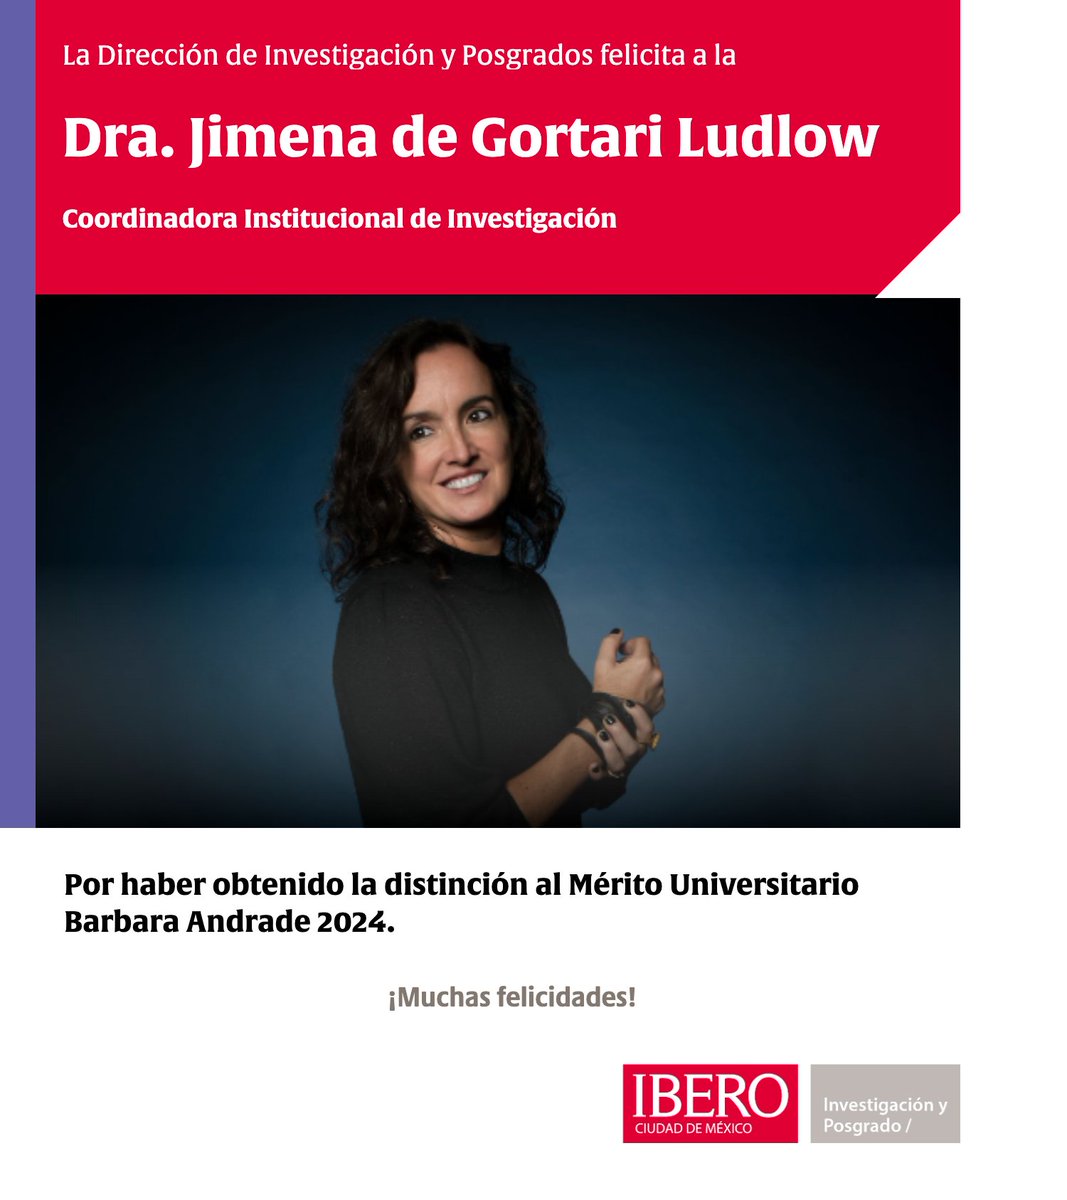 Con mucho gusto felicitamos a la Dra. Jimena de Gortari Ludlow (@jimenadegortari ), Coordinadora Institucional de Investigación de @IBERO_mx y académica de @ArqIBERO por este merecido reconocimiento. ¡Enhorabuena!